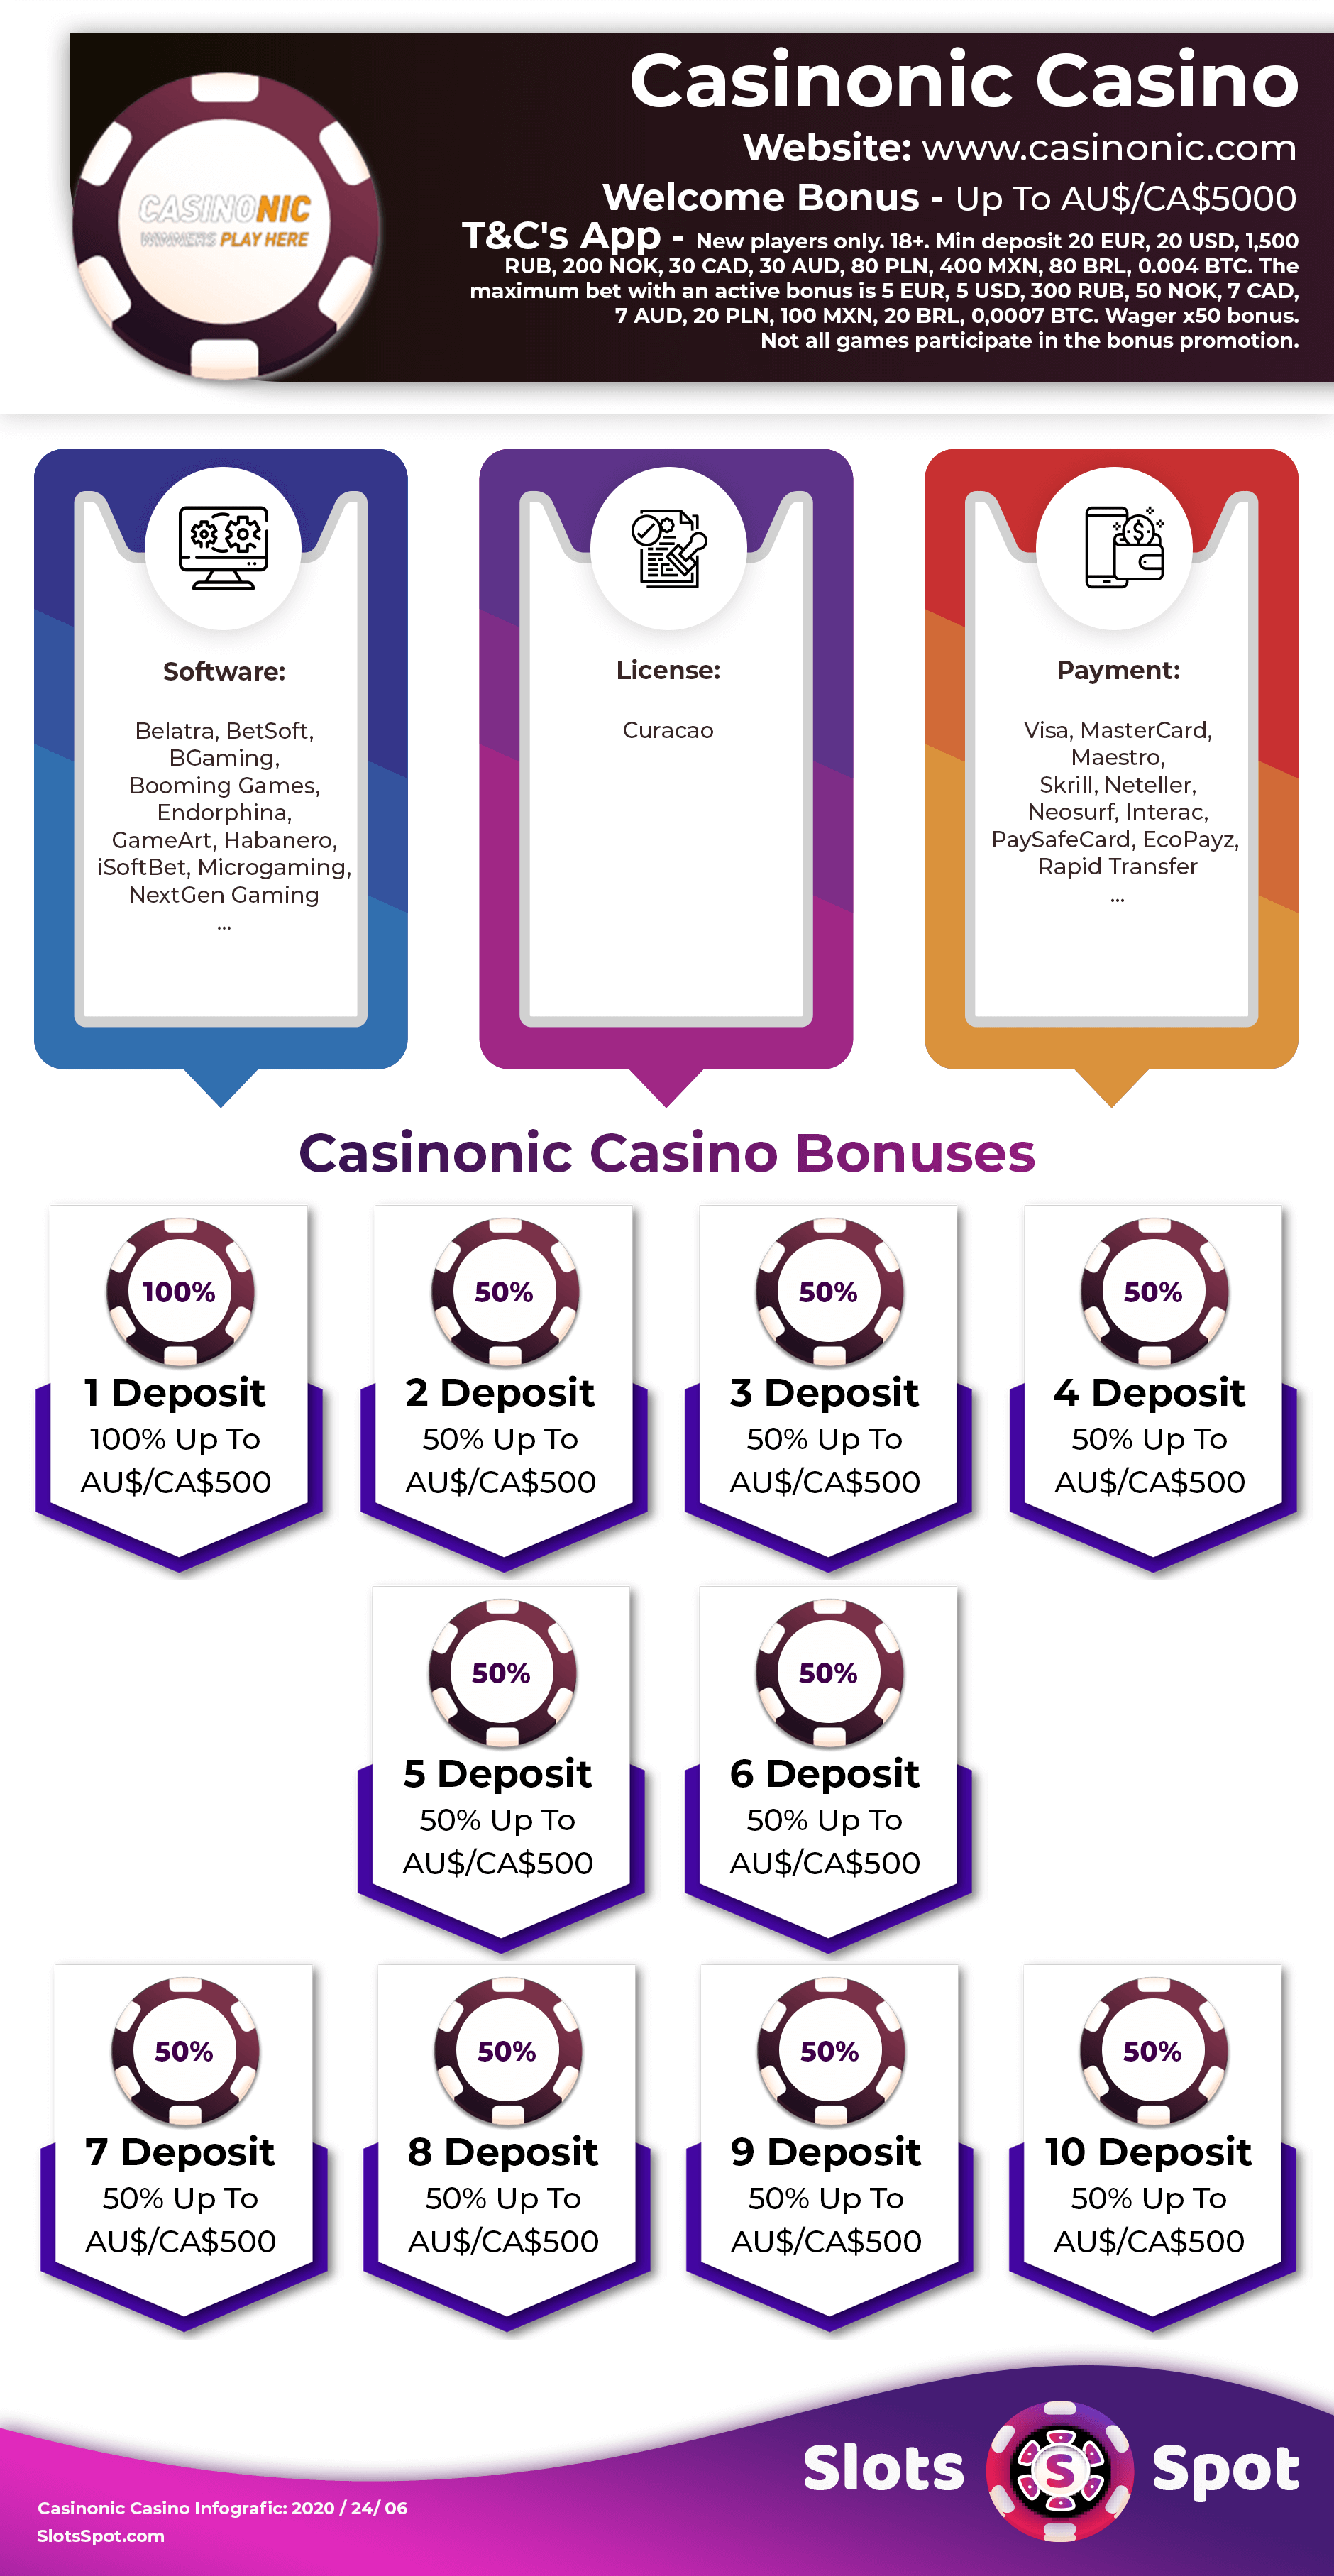 Casinonic Bonus Codes